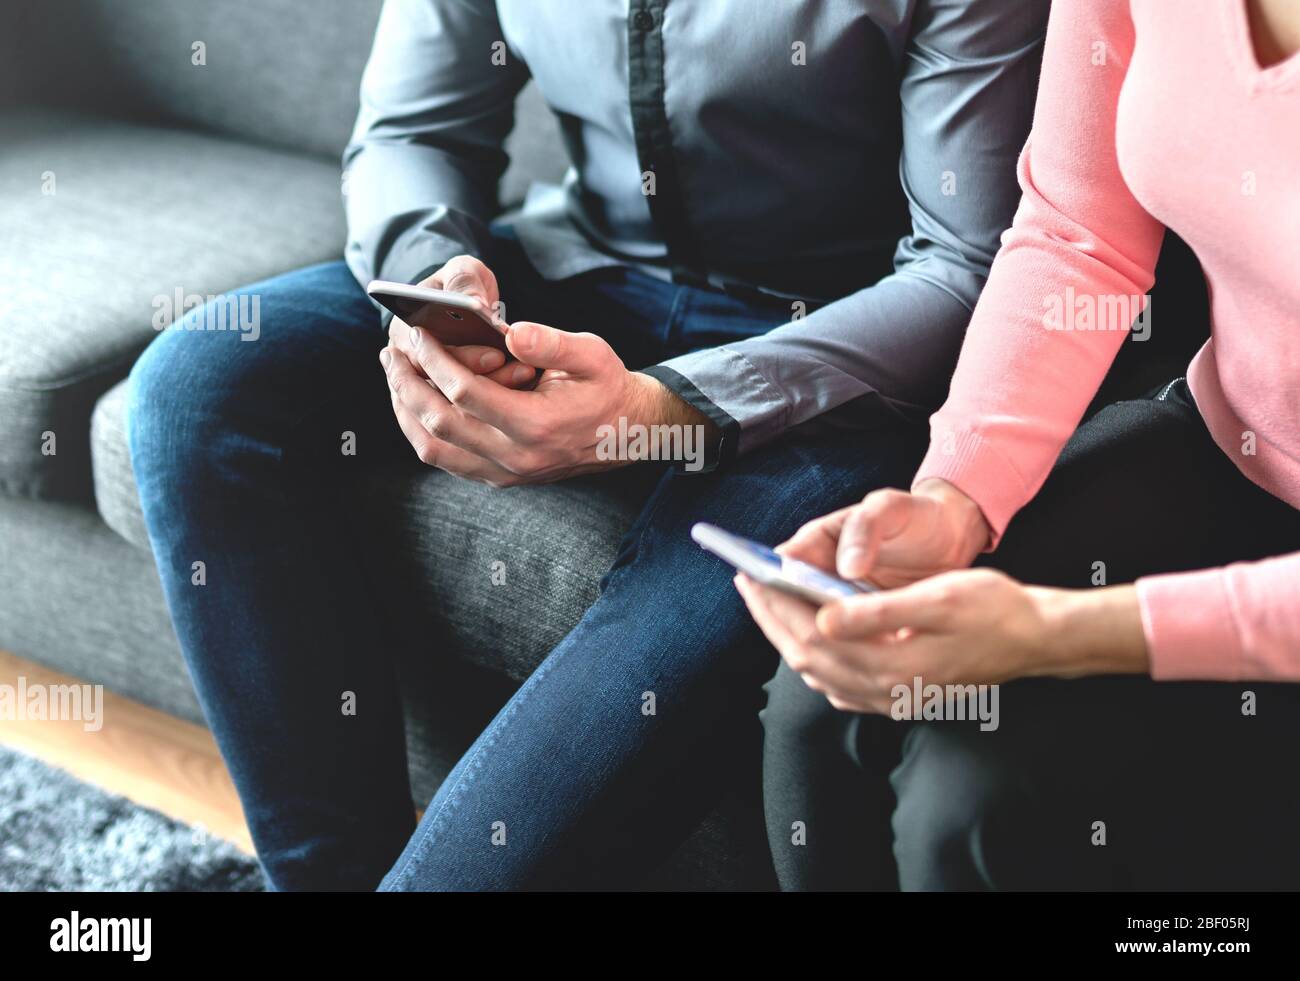 Zwei Personen mit Mobiltelefonen. Geschäftspartner, Freunde oder Paare, die auf ihr Smartphone schauen. Mann und Frau tauschen während des Treffens ihre Nummern aus. Stockfoto